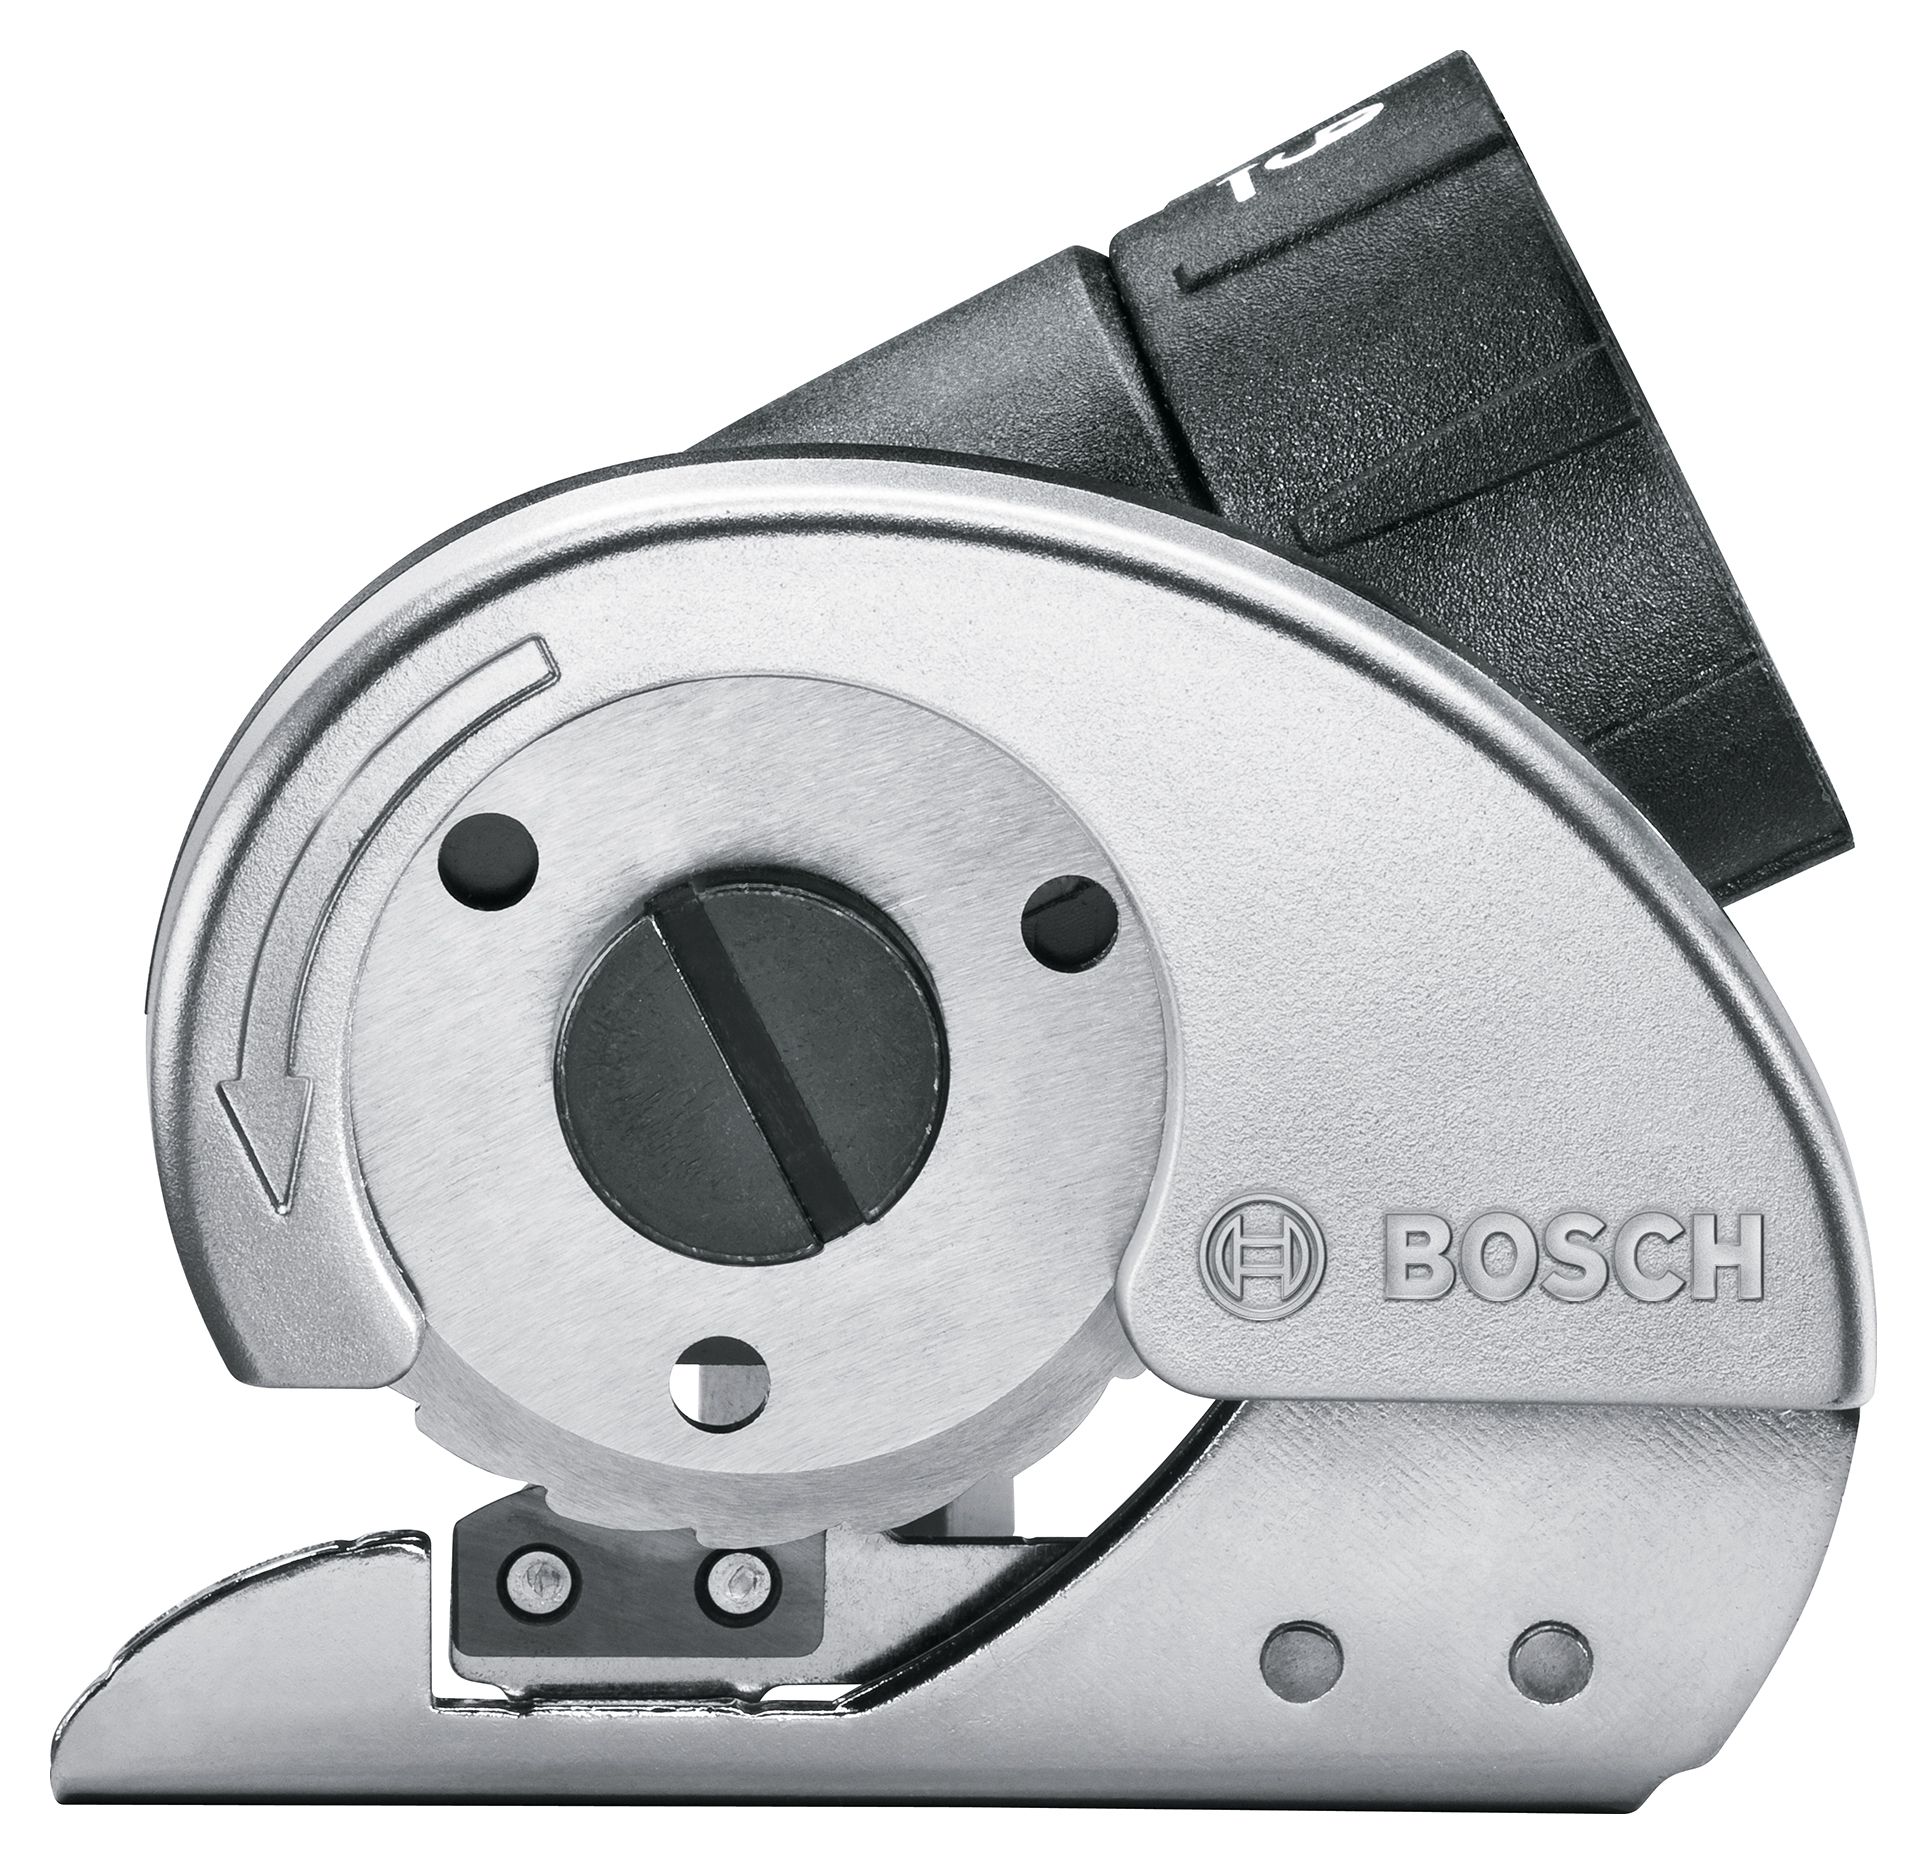 Image of Bosch IXO Universal Cutting Adapter